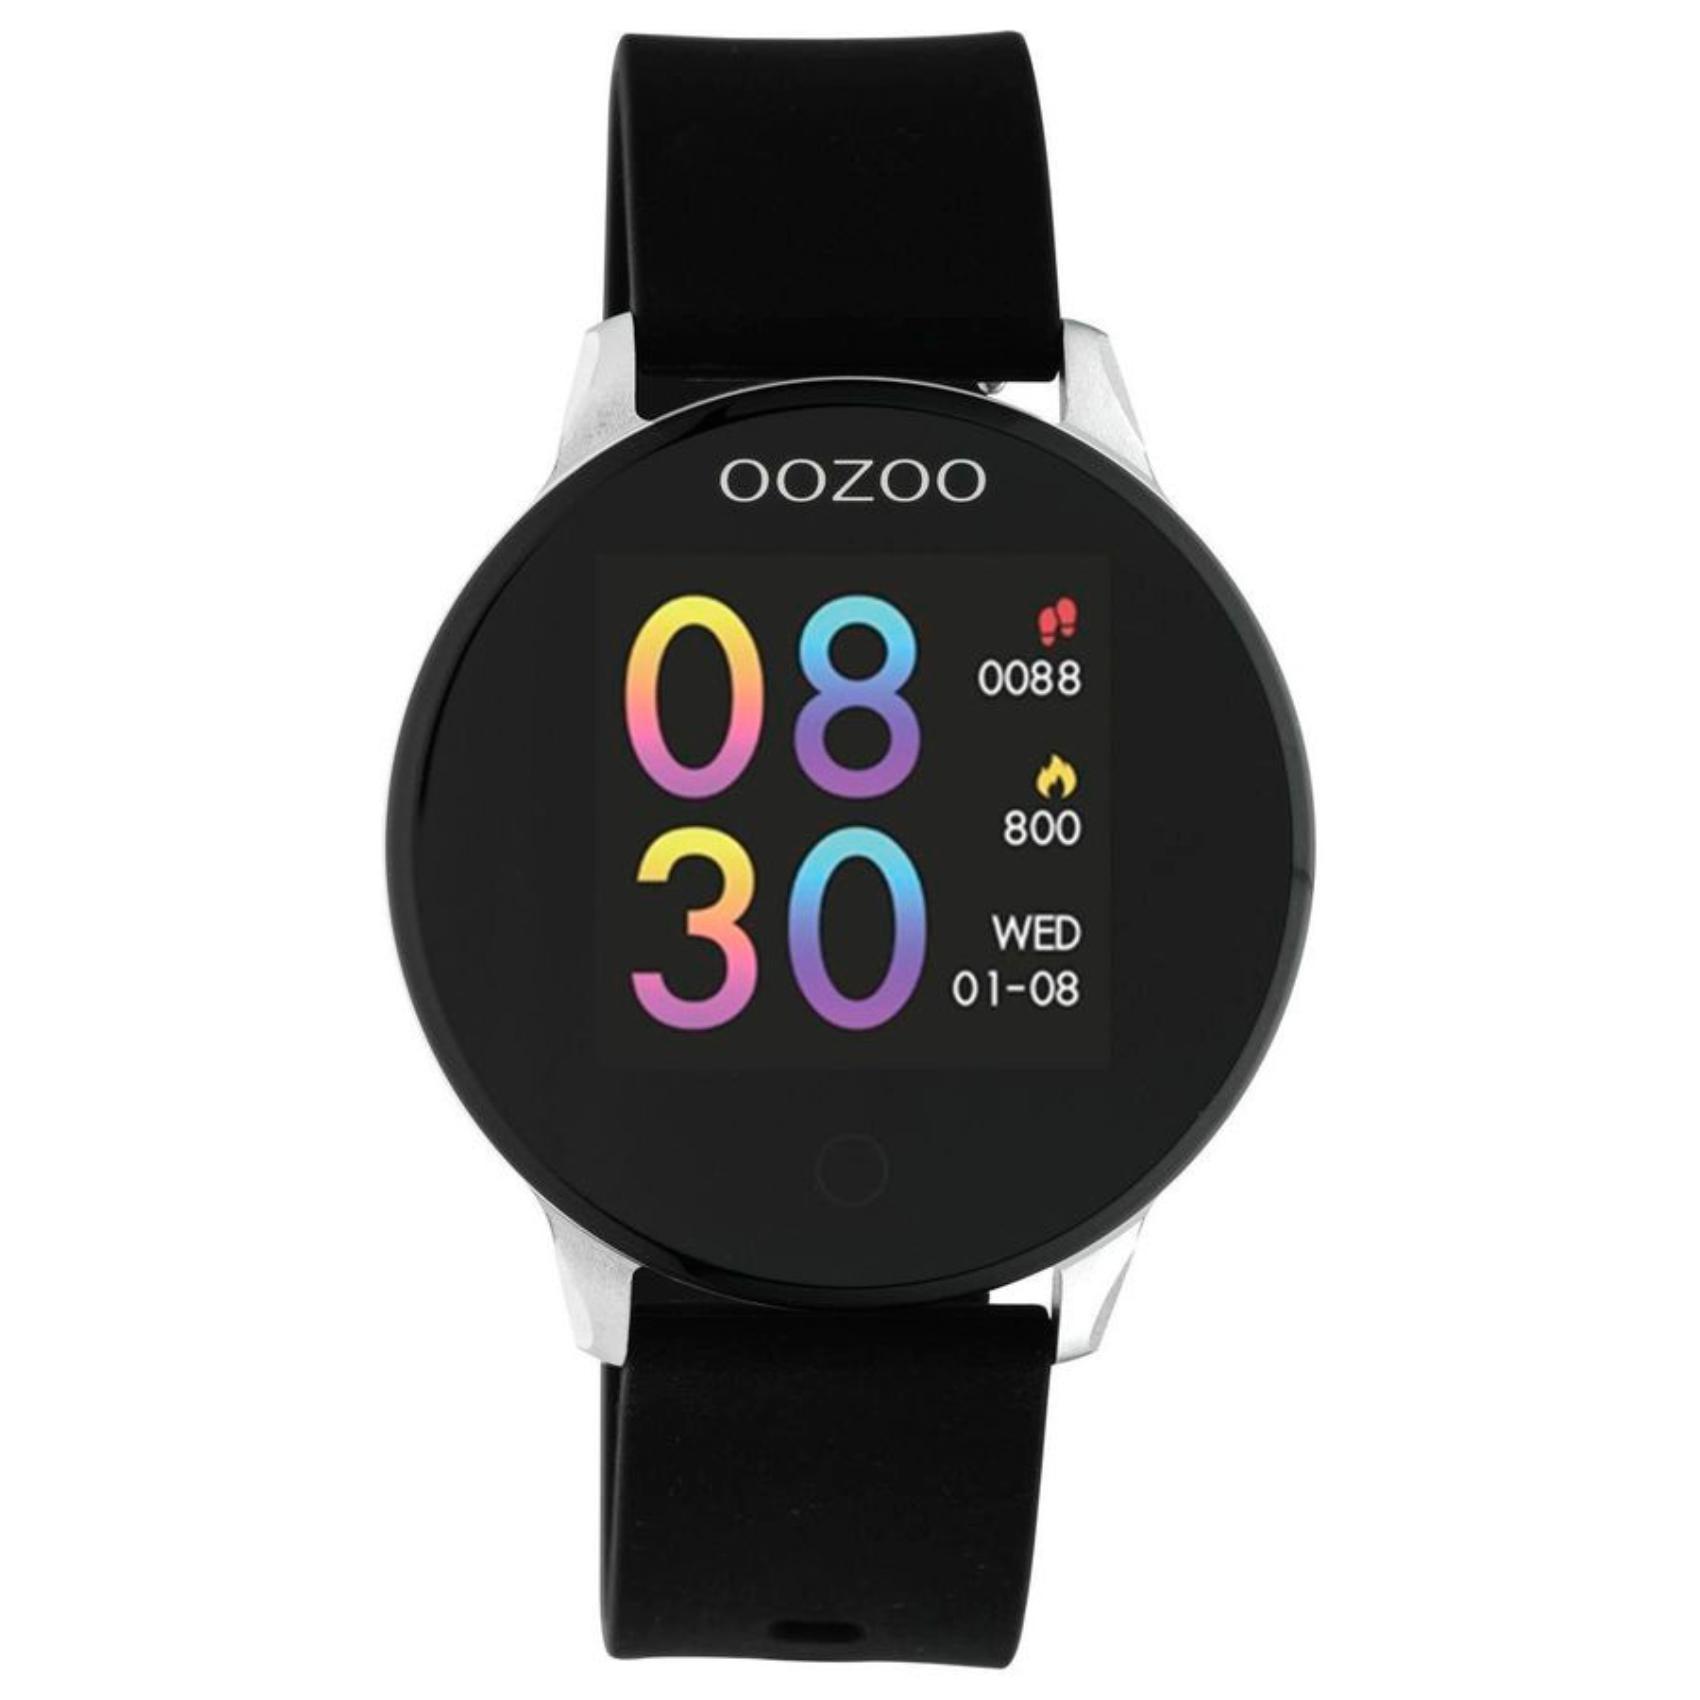 Smartwatch Oozoo Q00113 με μαύρο καουτσούκ λουράκι, οθόνη διάμετρου 43mm με λειτουργίες μέτρησης θερμιδών, βημάτων, καρδιακών παλμών και σύνδεση σε κινητό με bluetooth.